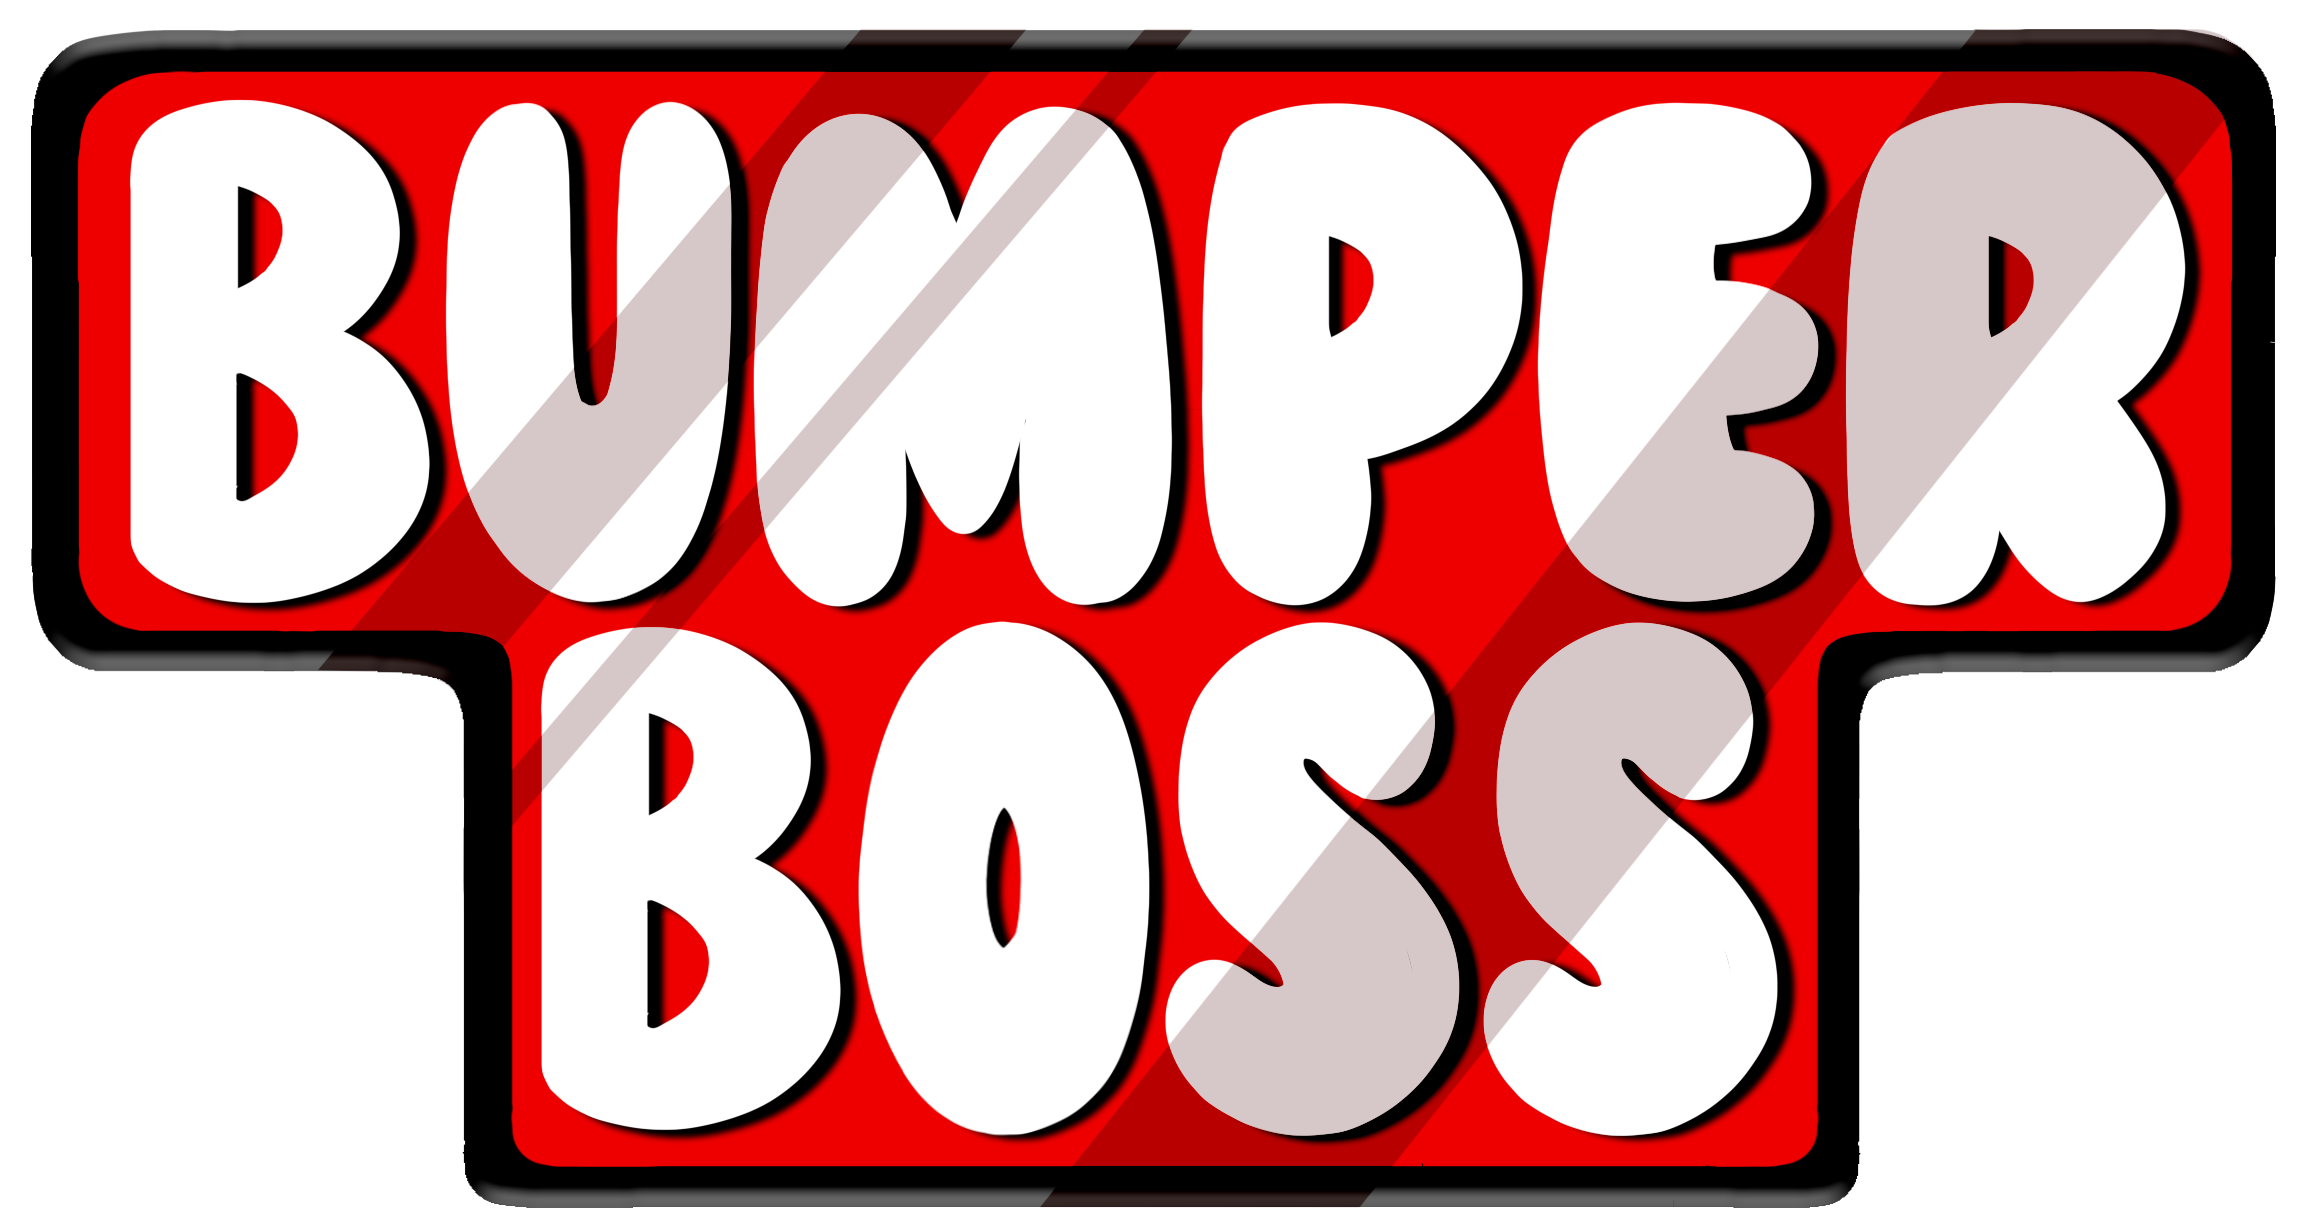 Bumper Boss